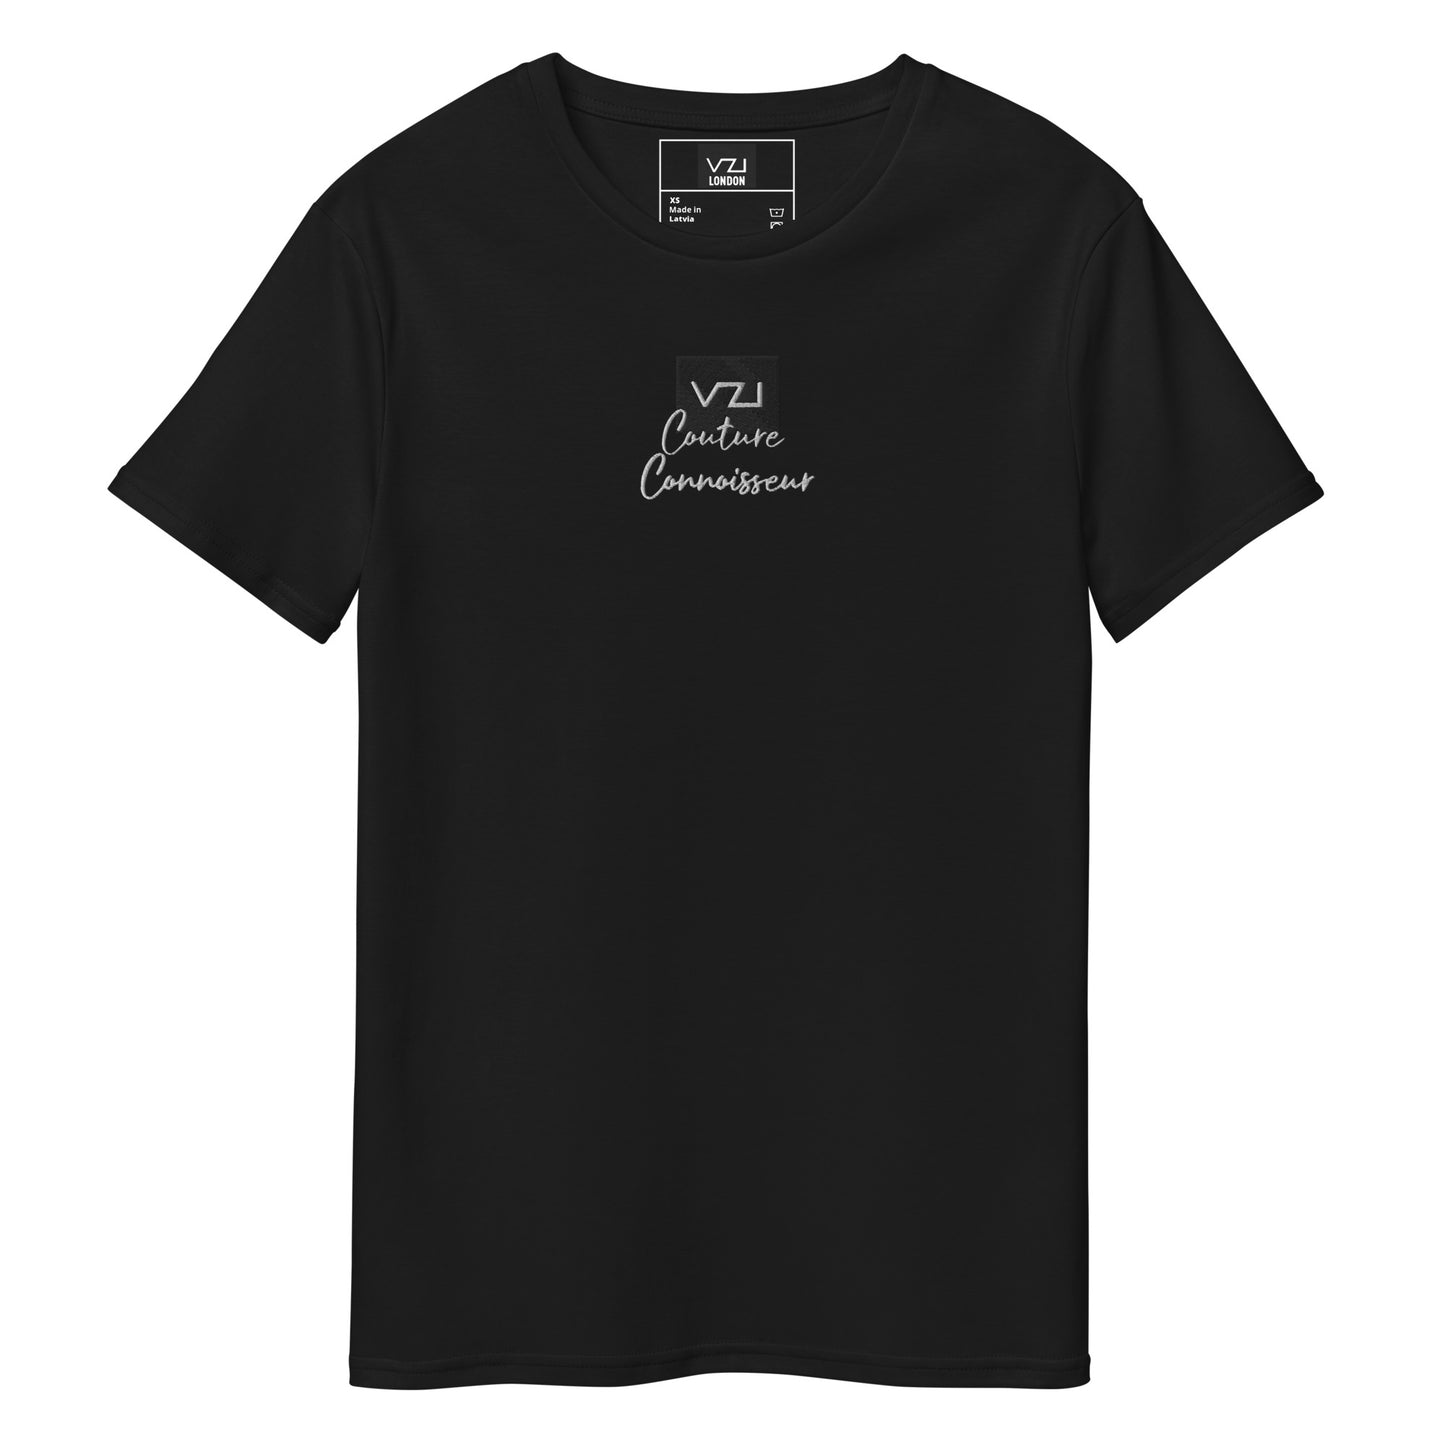 VZI Couture Connoisseur: T-Shirt für Herren – Premium-Baumwolle, Faden